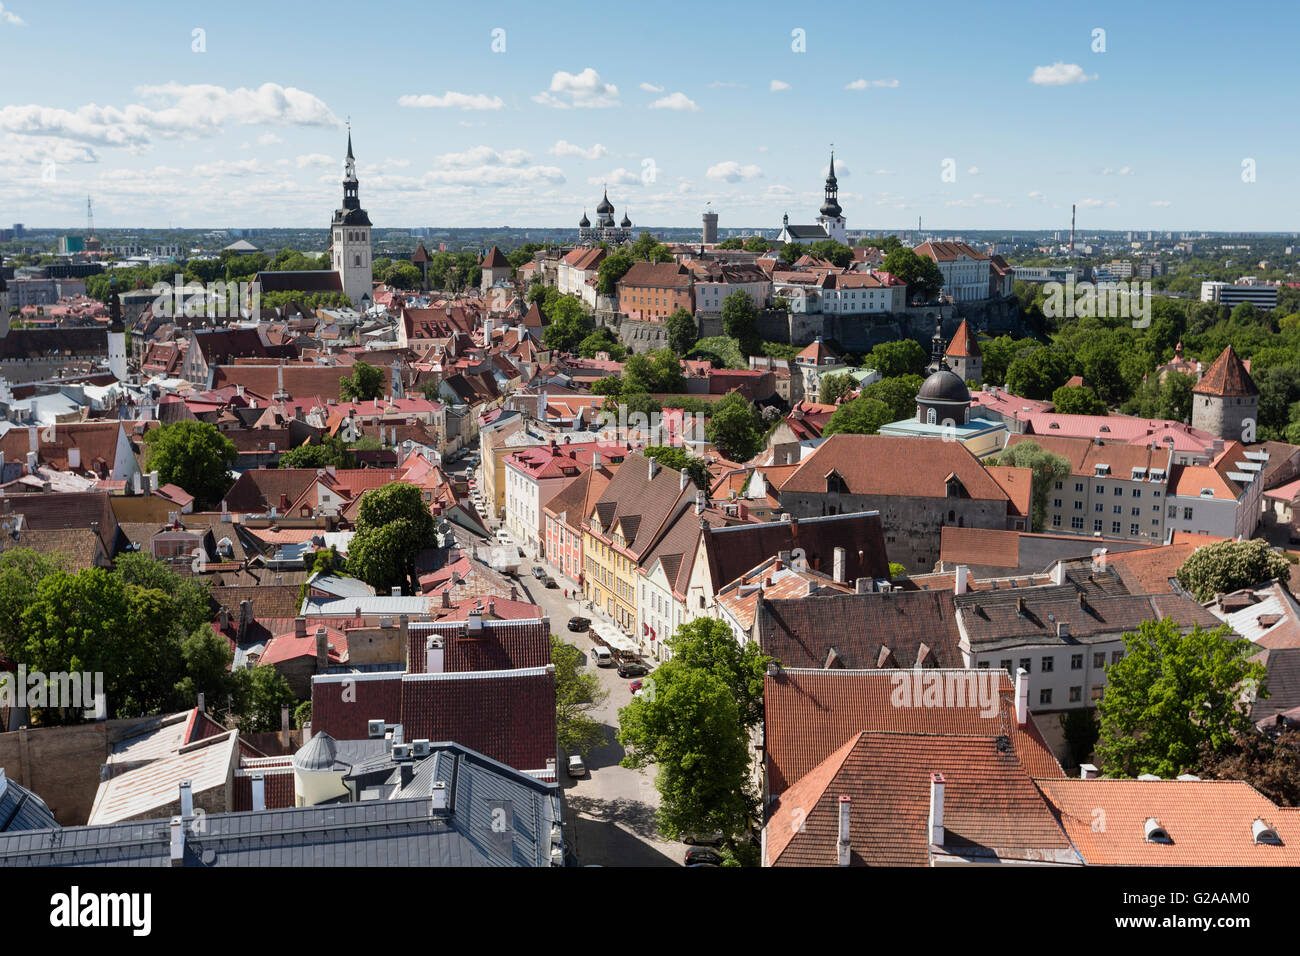 Allgemeine malerischen Blick auf die Altstadt Stadt Tallinn, Estland. Stockfoto